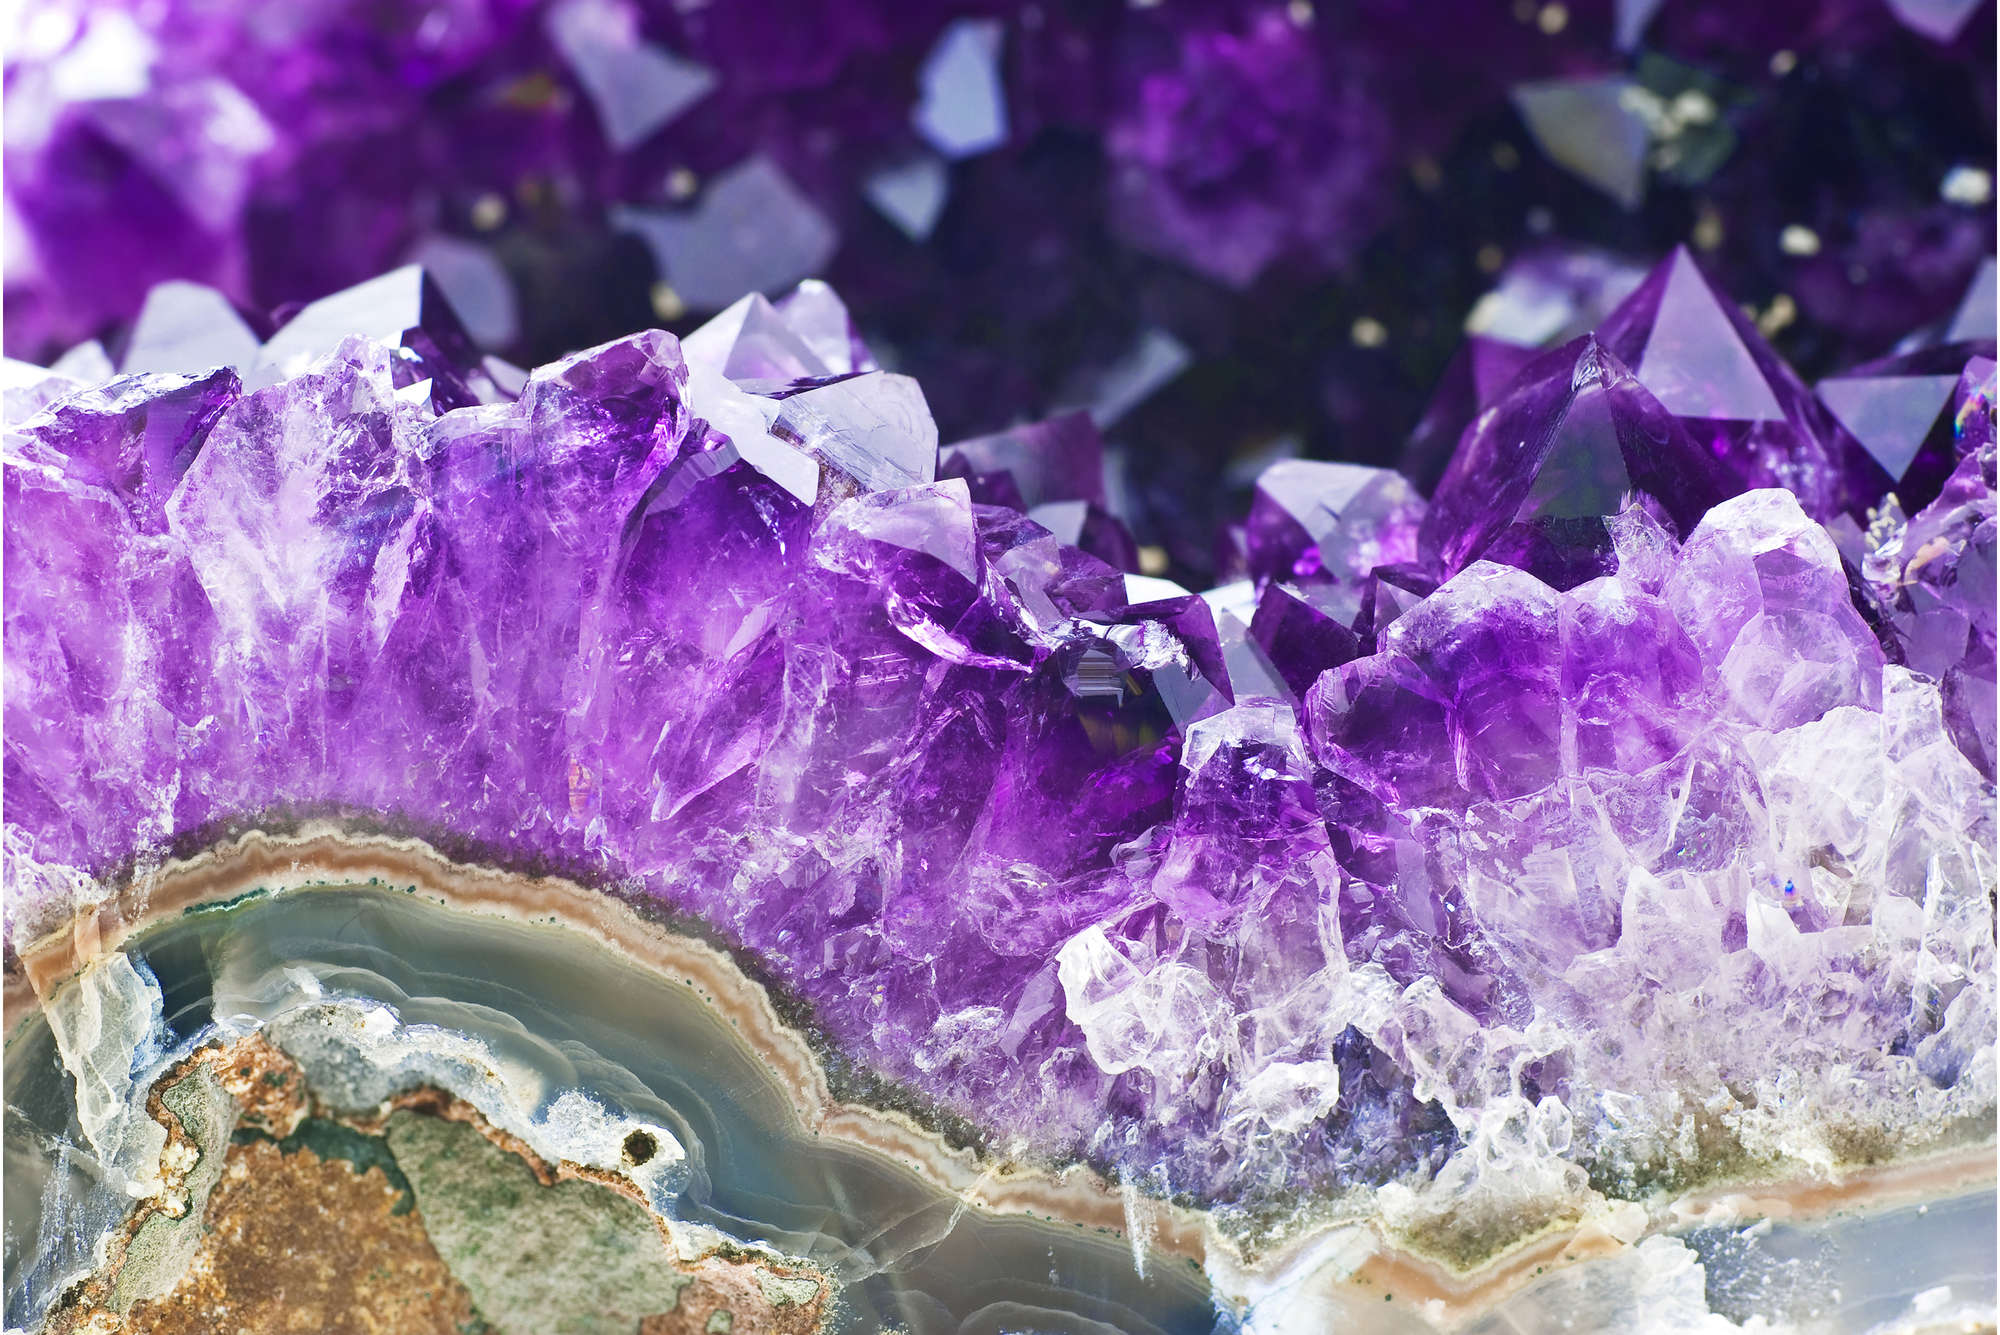             Fototapete Amethyst und Kristalle in Lila – Mattes Glattvlies
        